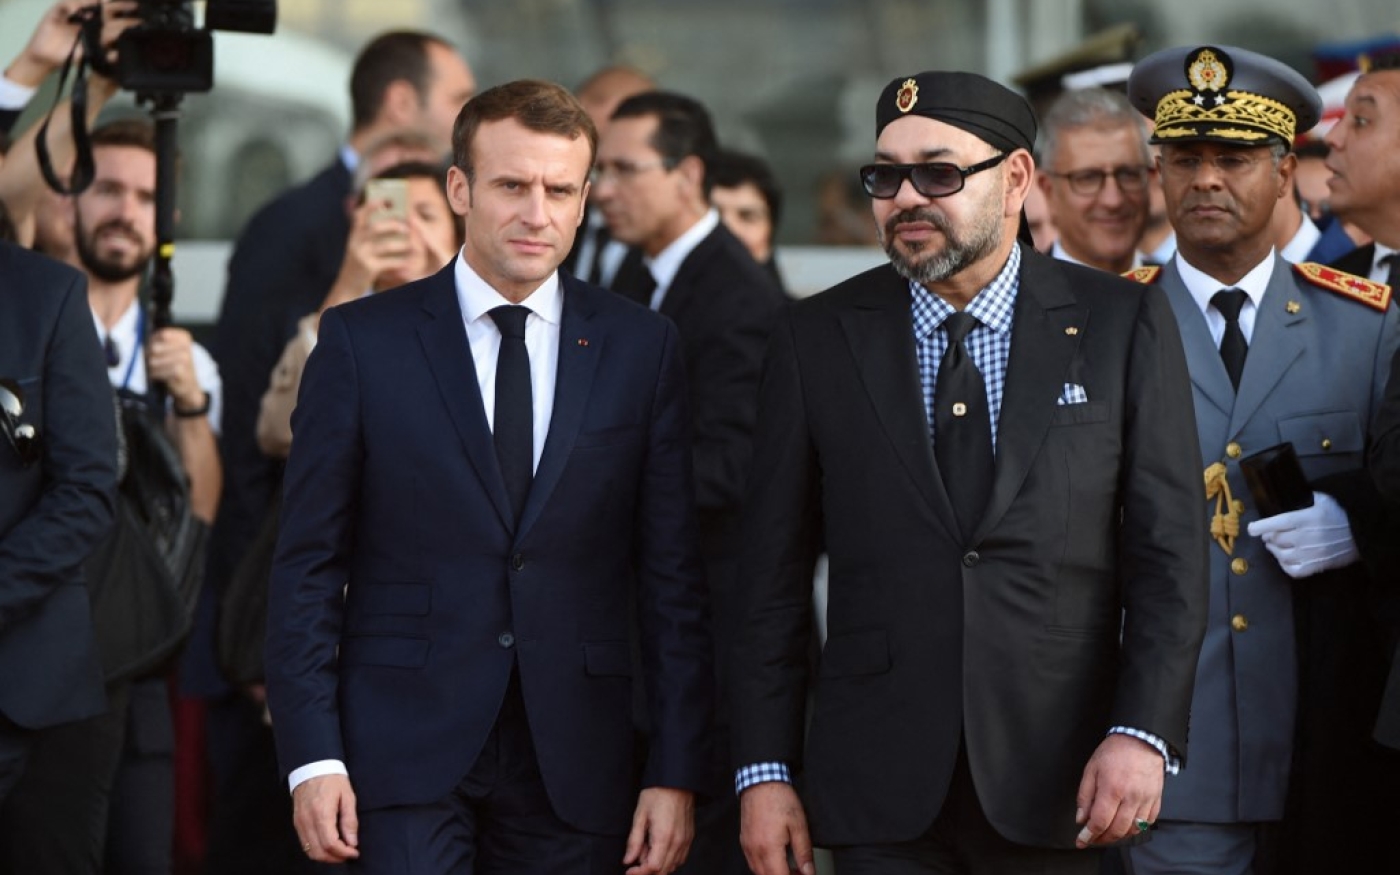 Le président français Emmanuel Macron arrive avec le roi du Maroc Mohammed VI à la gare de Rabat Agdal pour l’inauguration d’une ligne ferroviaire à grande vitesse, le 15 novembre 2018 (AFP/FAdel Senna)